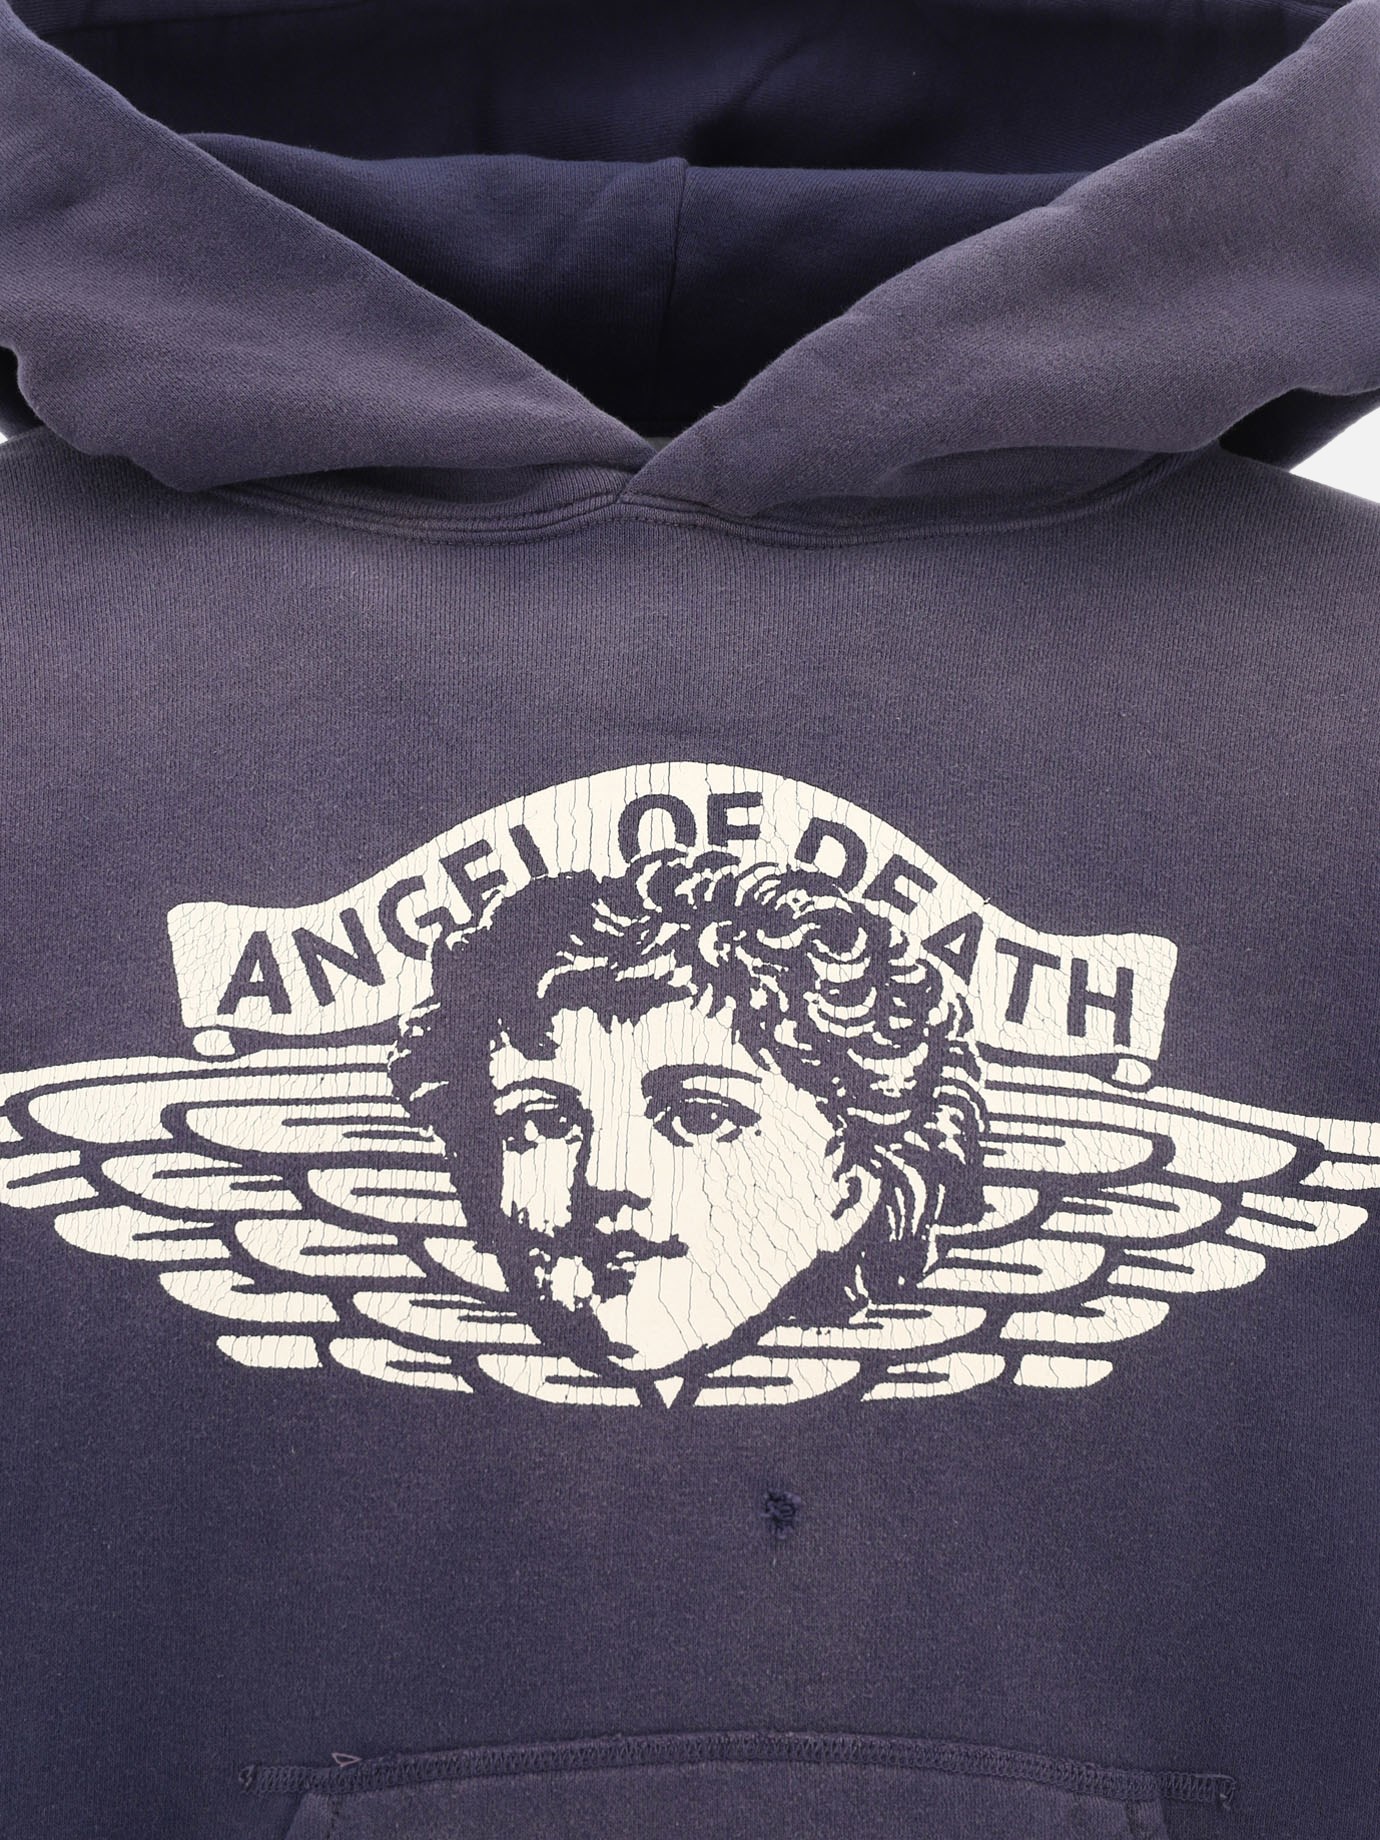 Mサイズ SAINT MICHAEL ANGEL OF DEATH パーカー-